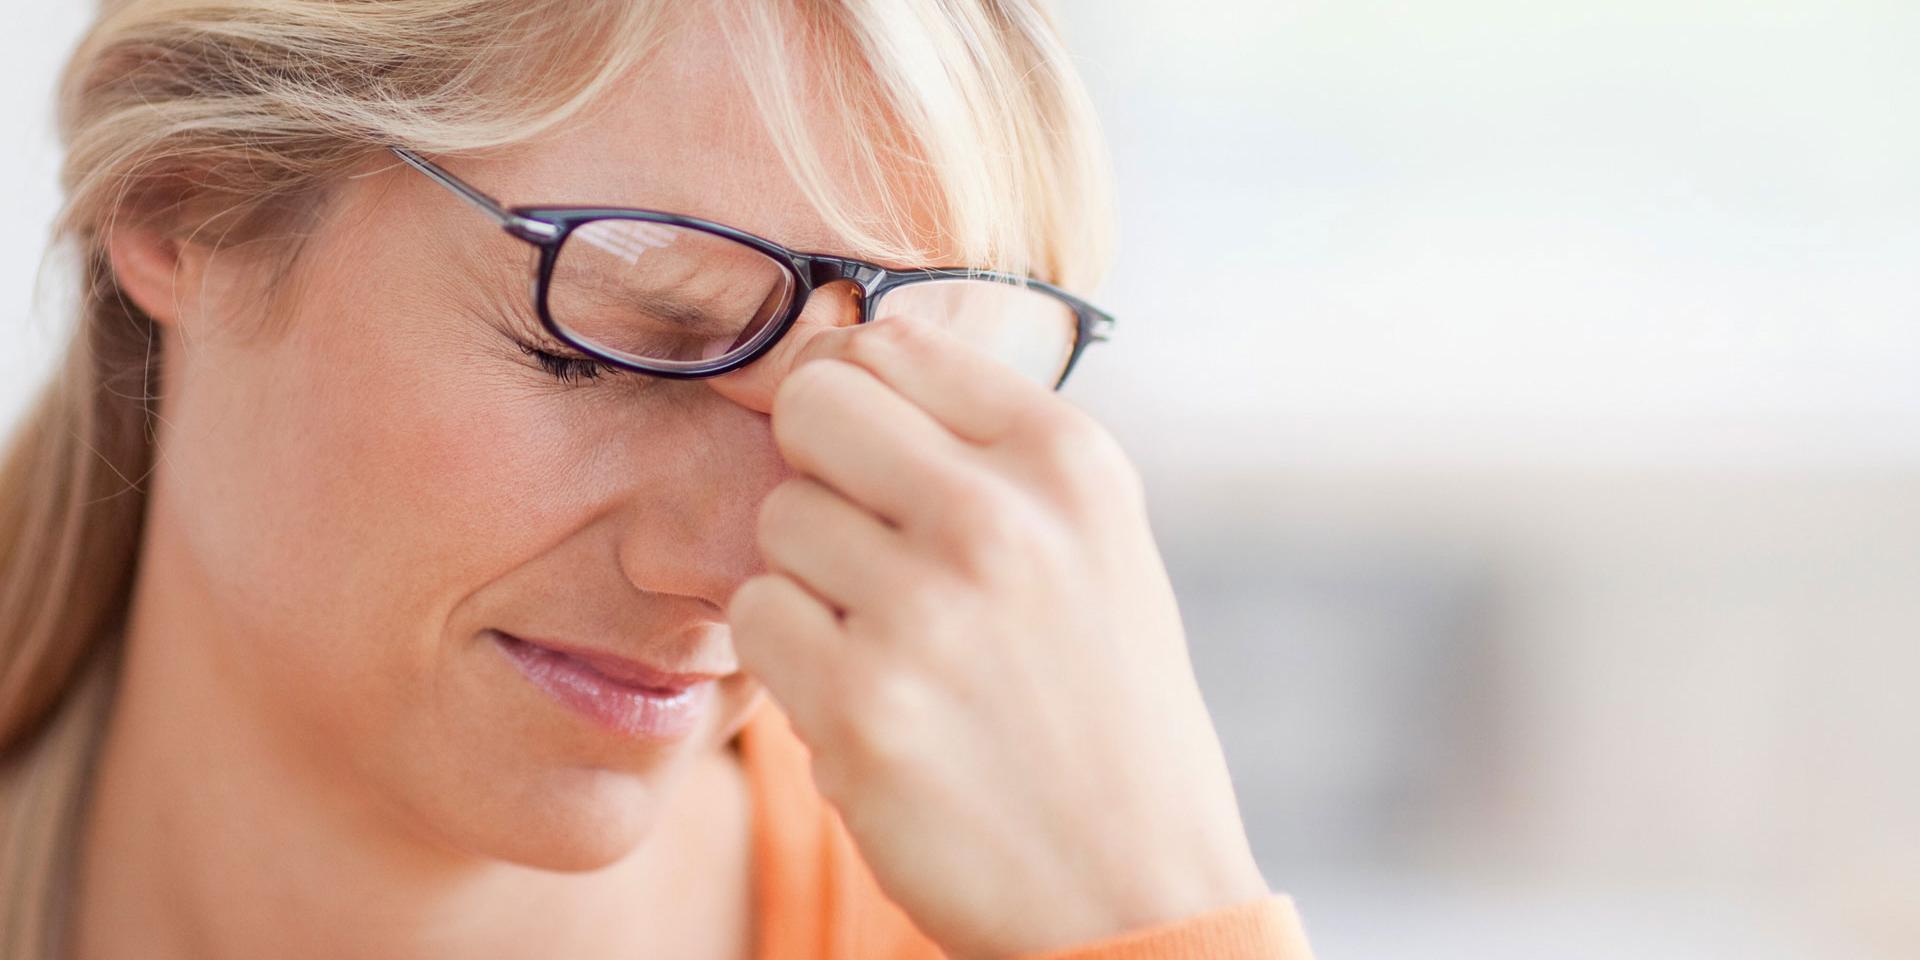 Kann die falsche Brille oder schlechtes Licht den Augen schaden?